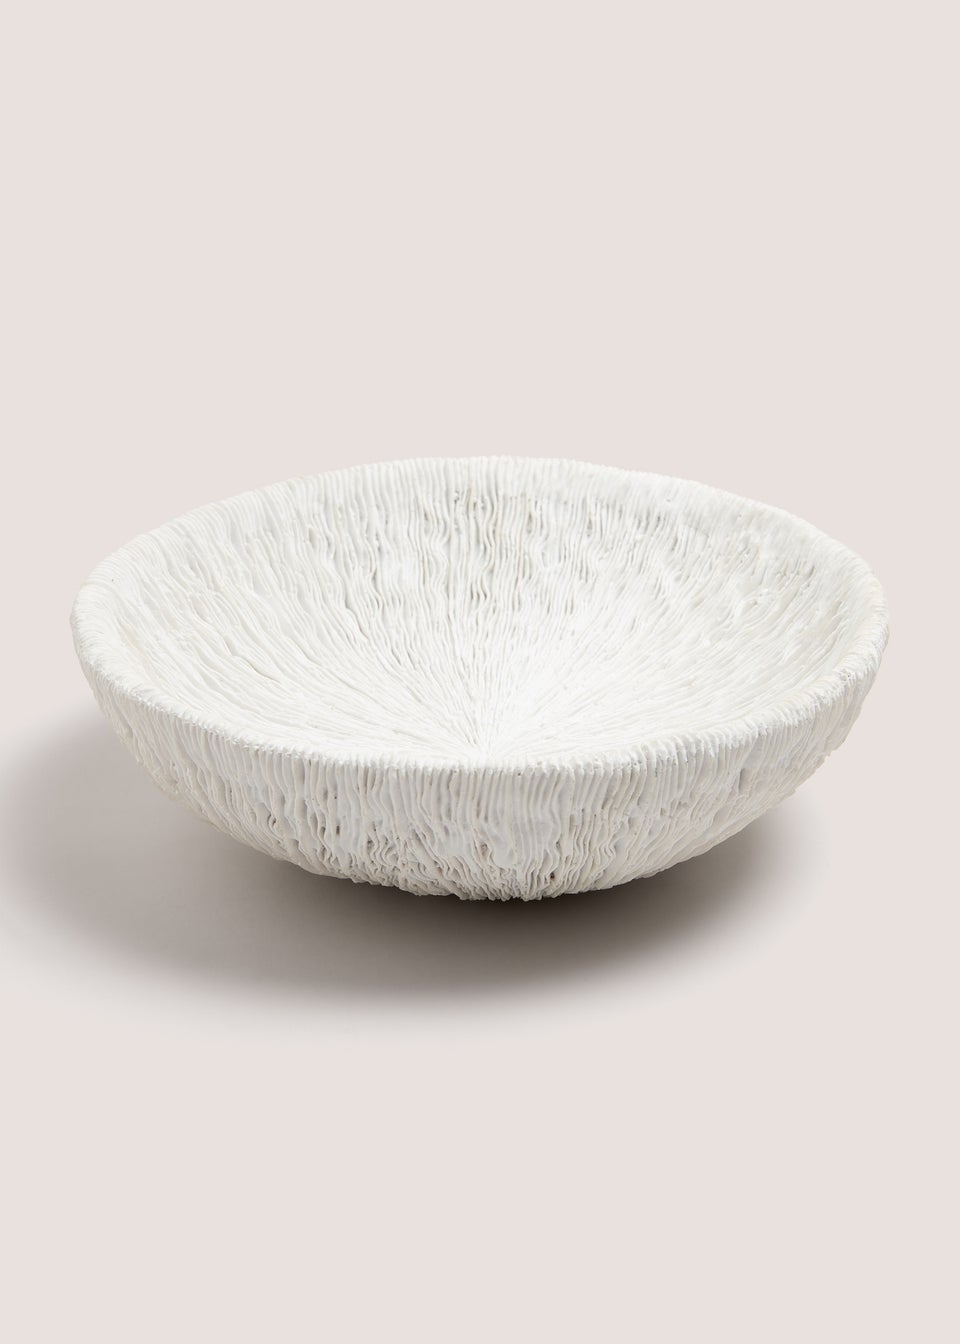 White Embossed Decorative Bowl (75cm x 25cm x 25cm)